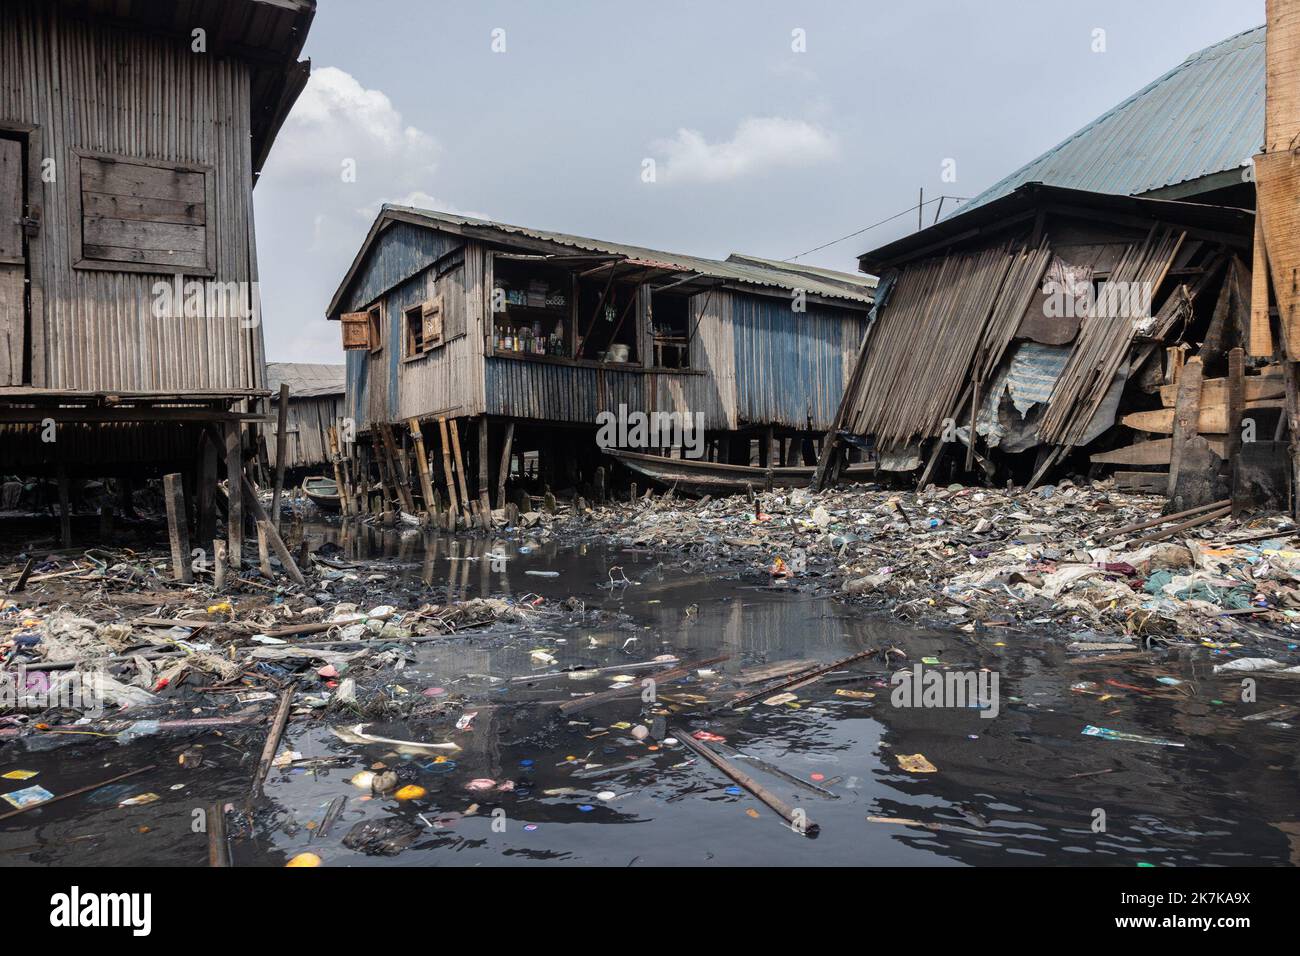 ©Sadak Souici / Le Pictorium/MAXPPP - Lagos 18/01/2022 Sadak Souici / Le Pictorium - 18/1/2022 - Nigeria / Lagos - Partout a travers le bidonville, des cartons d'emballage de poissons surgeles a l'autre bout du monde flottent a la surface d'une eau noire parsemee de dechets, makoko, Lagos, 18/01/2022 / 18/1/2022 - Nigeria / Lagos - im Slum schweben Kartons mit gefrorenen Fischen von der anderen Seite der Welt auf der Oberfläche von schwarzem Wasser, das mit Müll, verfaulenden Tieren und menschlichen Exkrementen übersät ist.Makoko, Lagos, 18/01/2022 Stockfoto